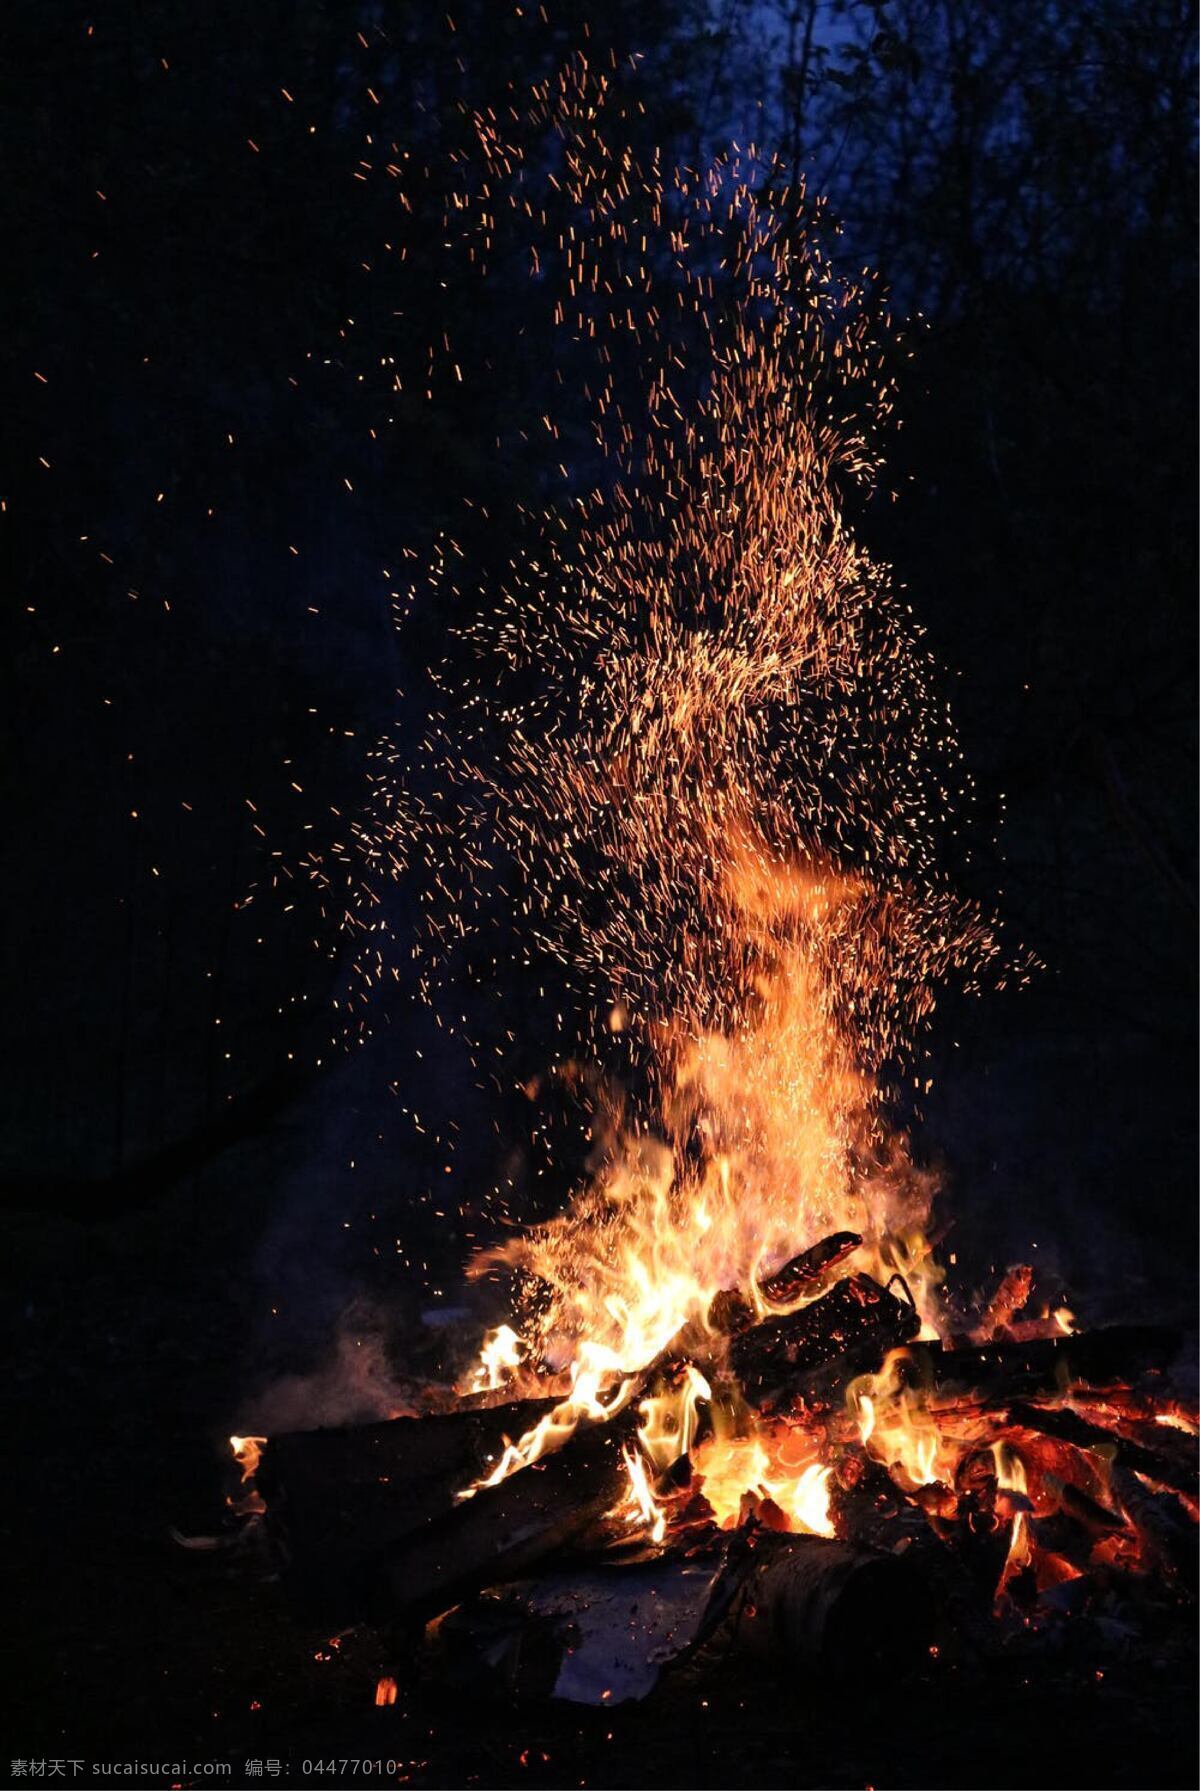 火焰图片 圣诞节 海报 背景 元素 自然景观 自然风景